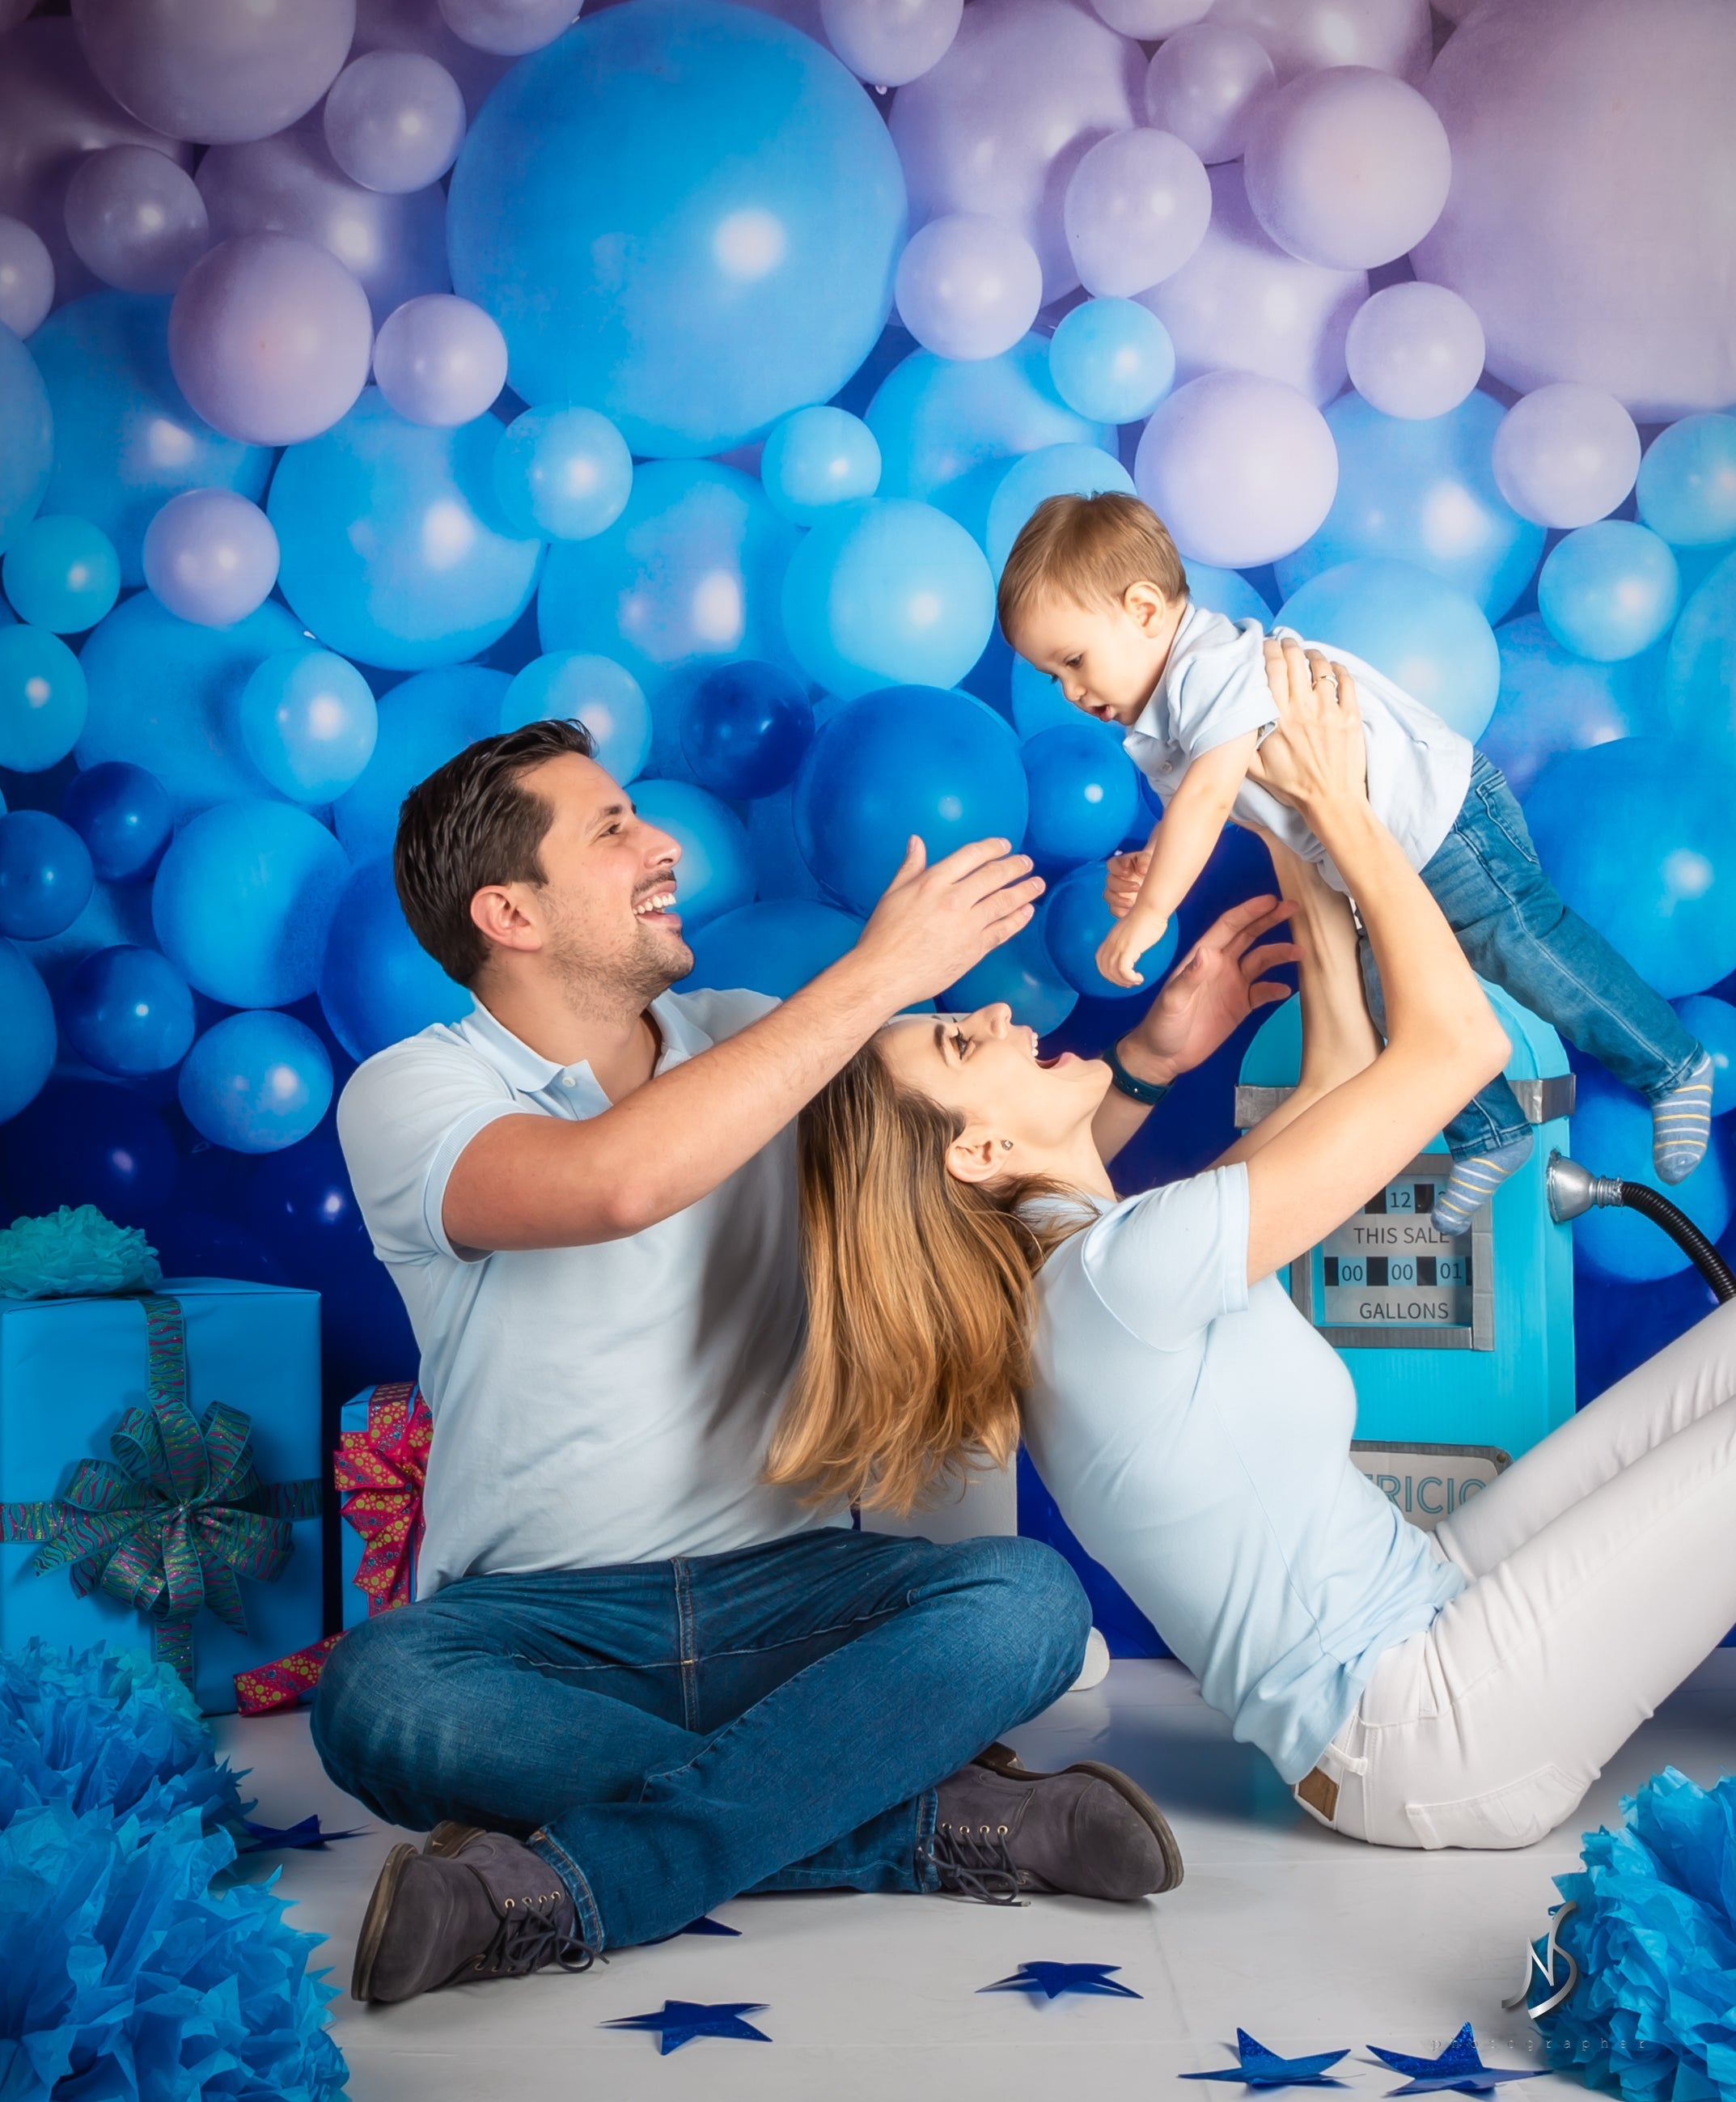 Kate Enfants Mur de ballons Bleu Toile de fond conçu par Mandy Ringe Photographie